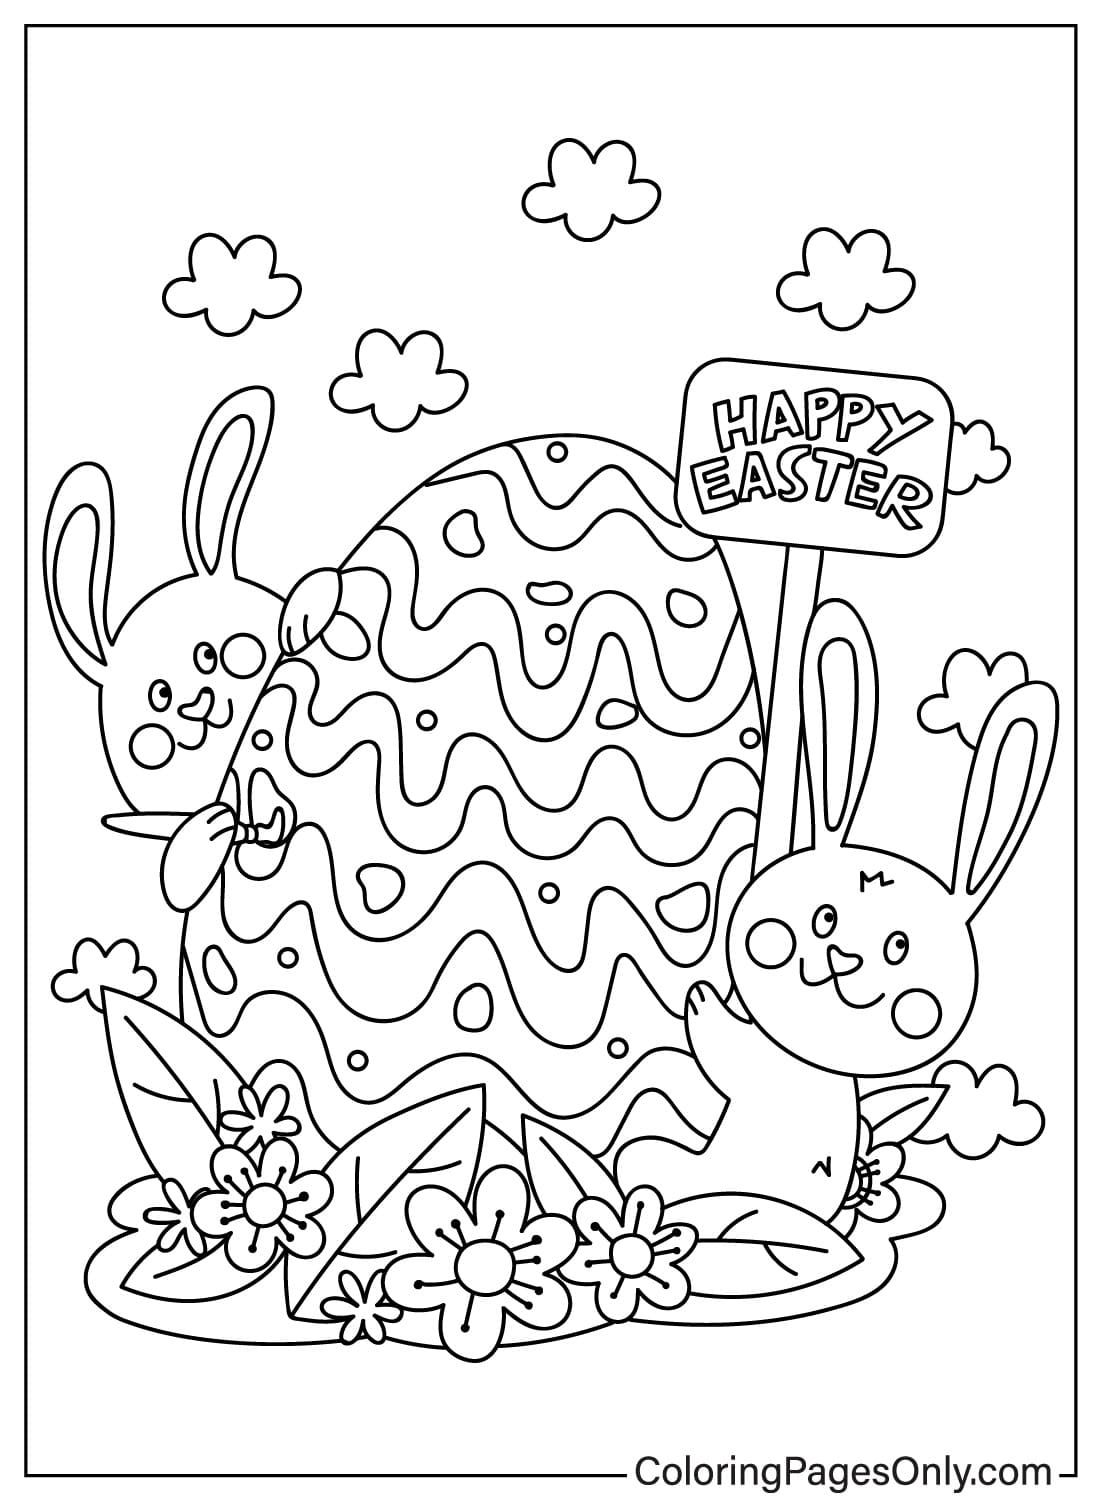 从复活节兔子绘制复活节兔子着色页